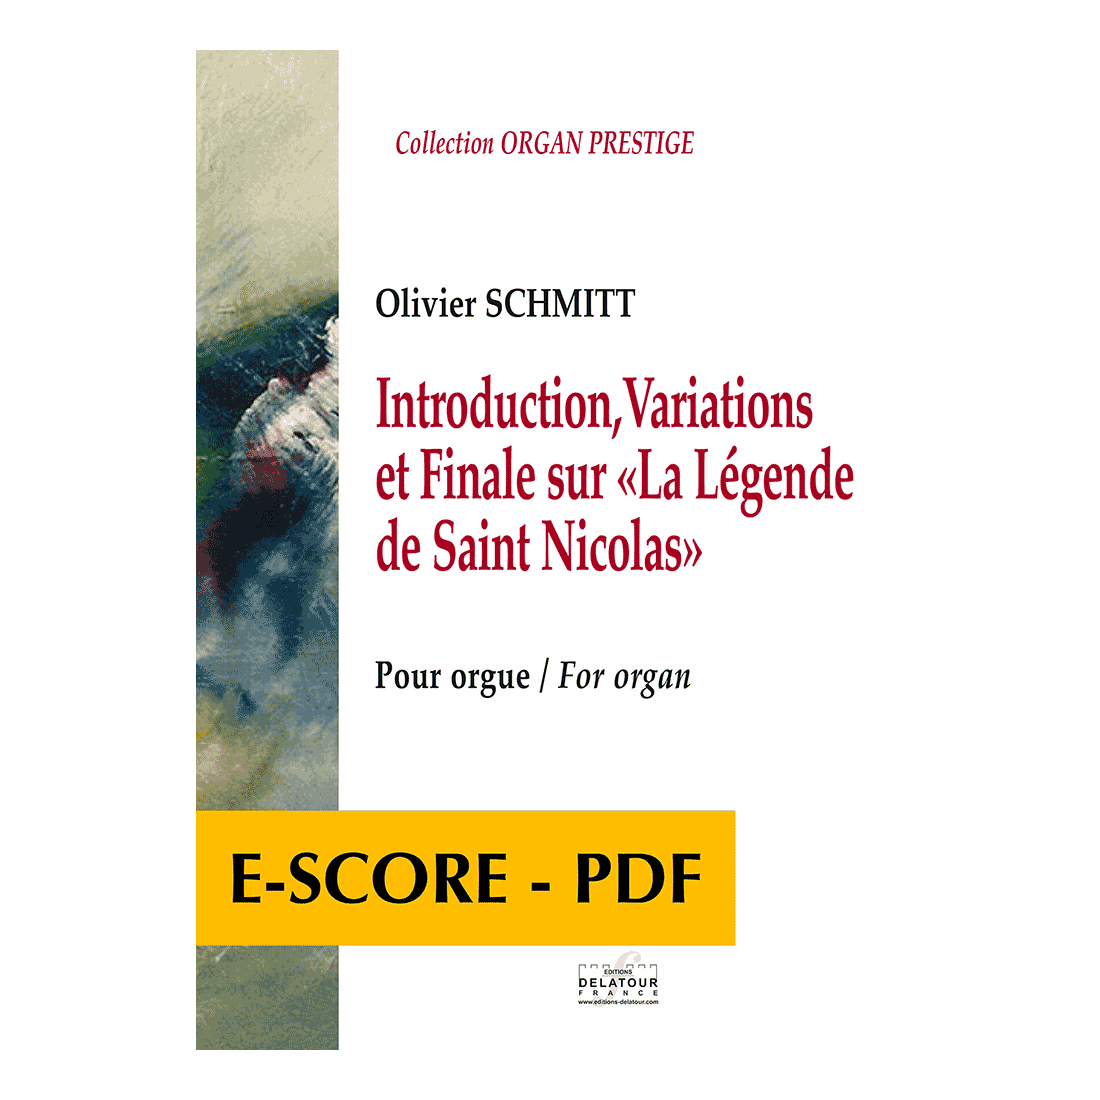 Introduction, Variations et Finale sur « La légende de Saint Nicolas » pour orgue - E-score PDF